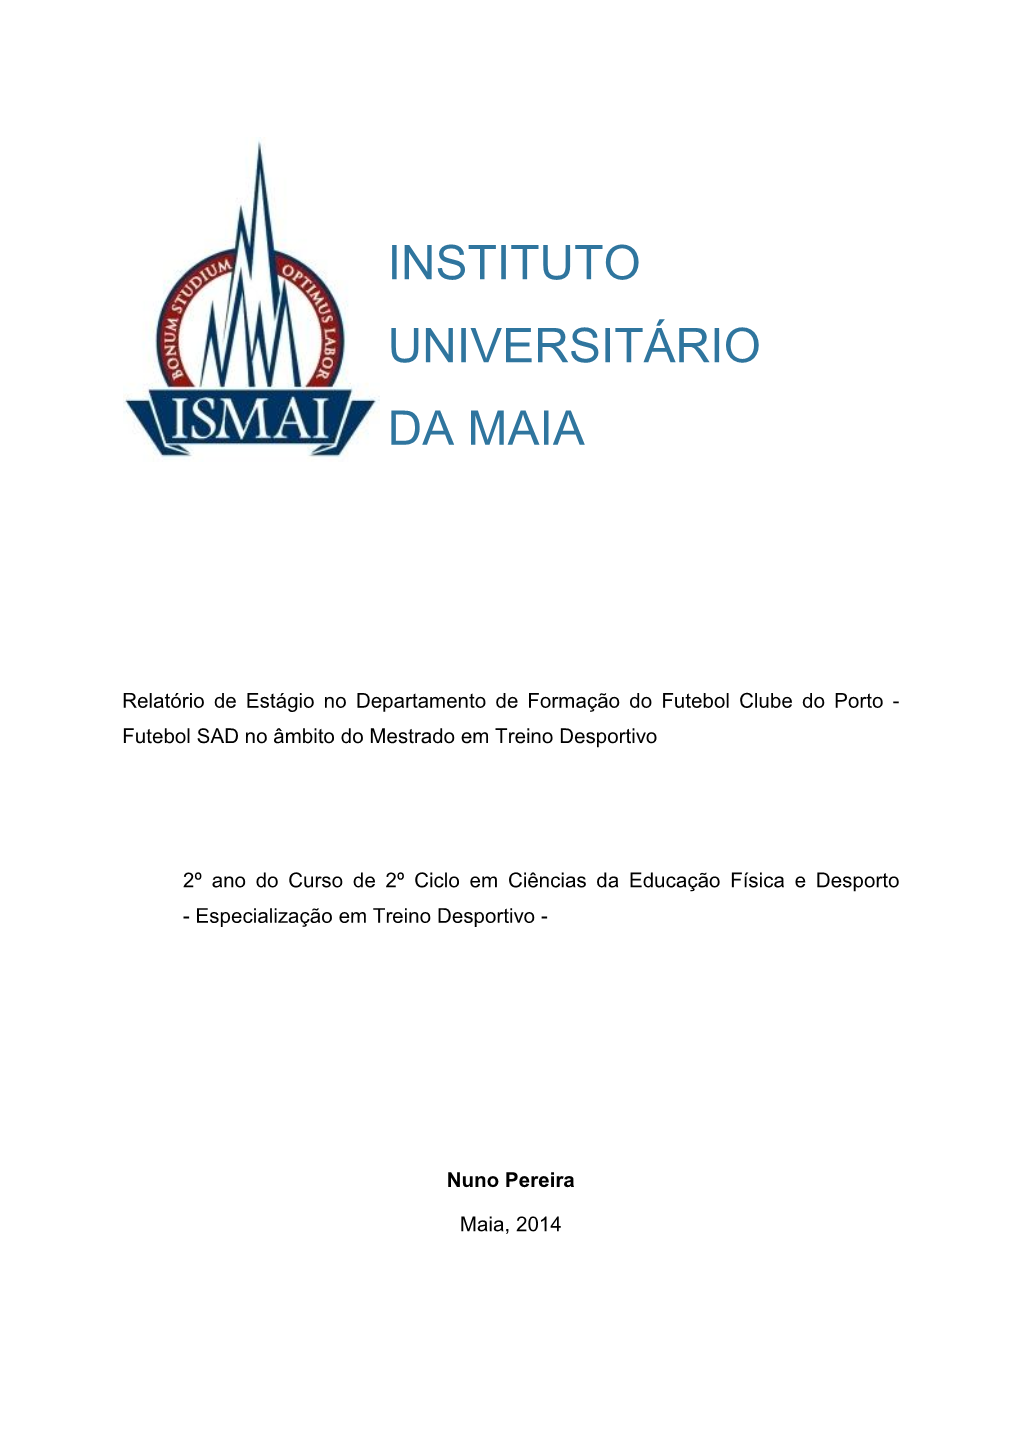 Instituto Universitário Da Maia Nuno Pereira